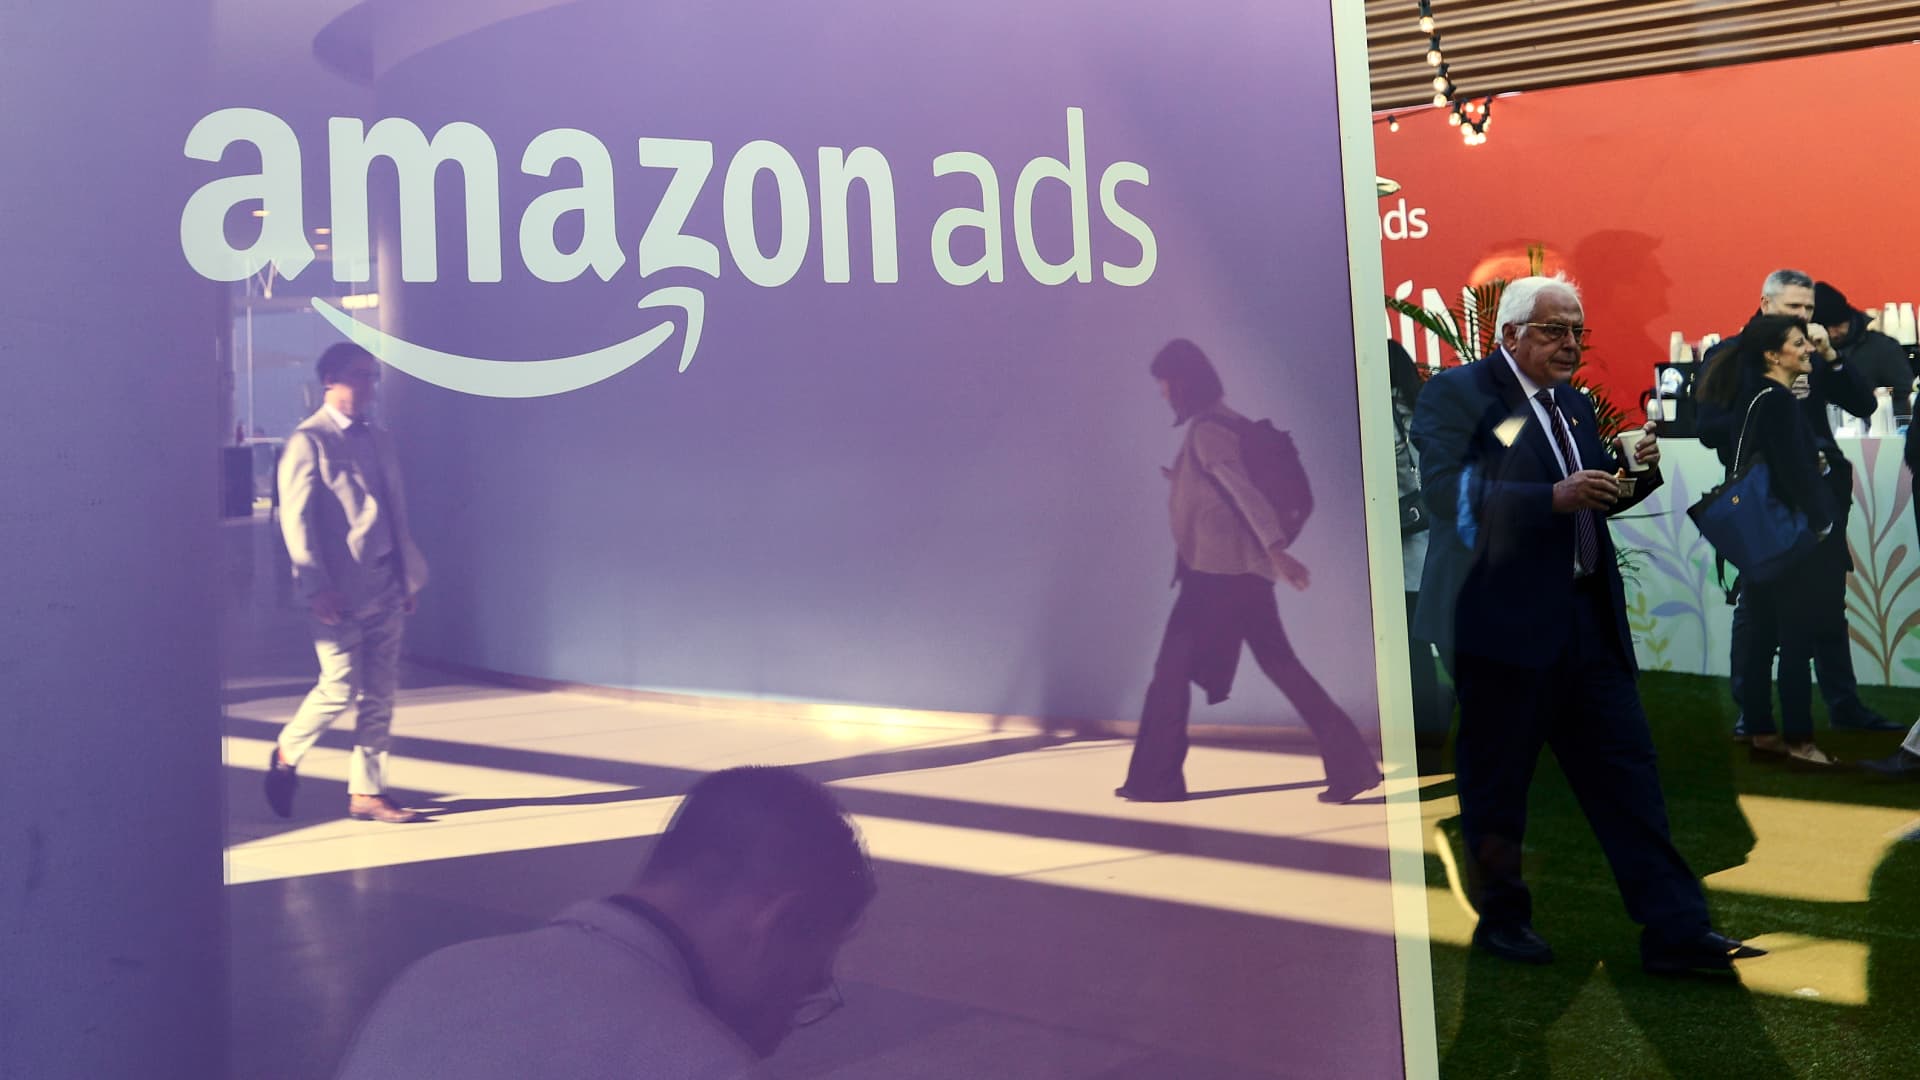 Amazon's advertising revenue tops $12 billion in the third quarter